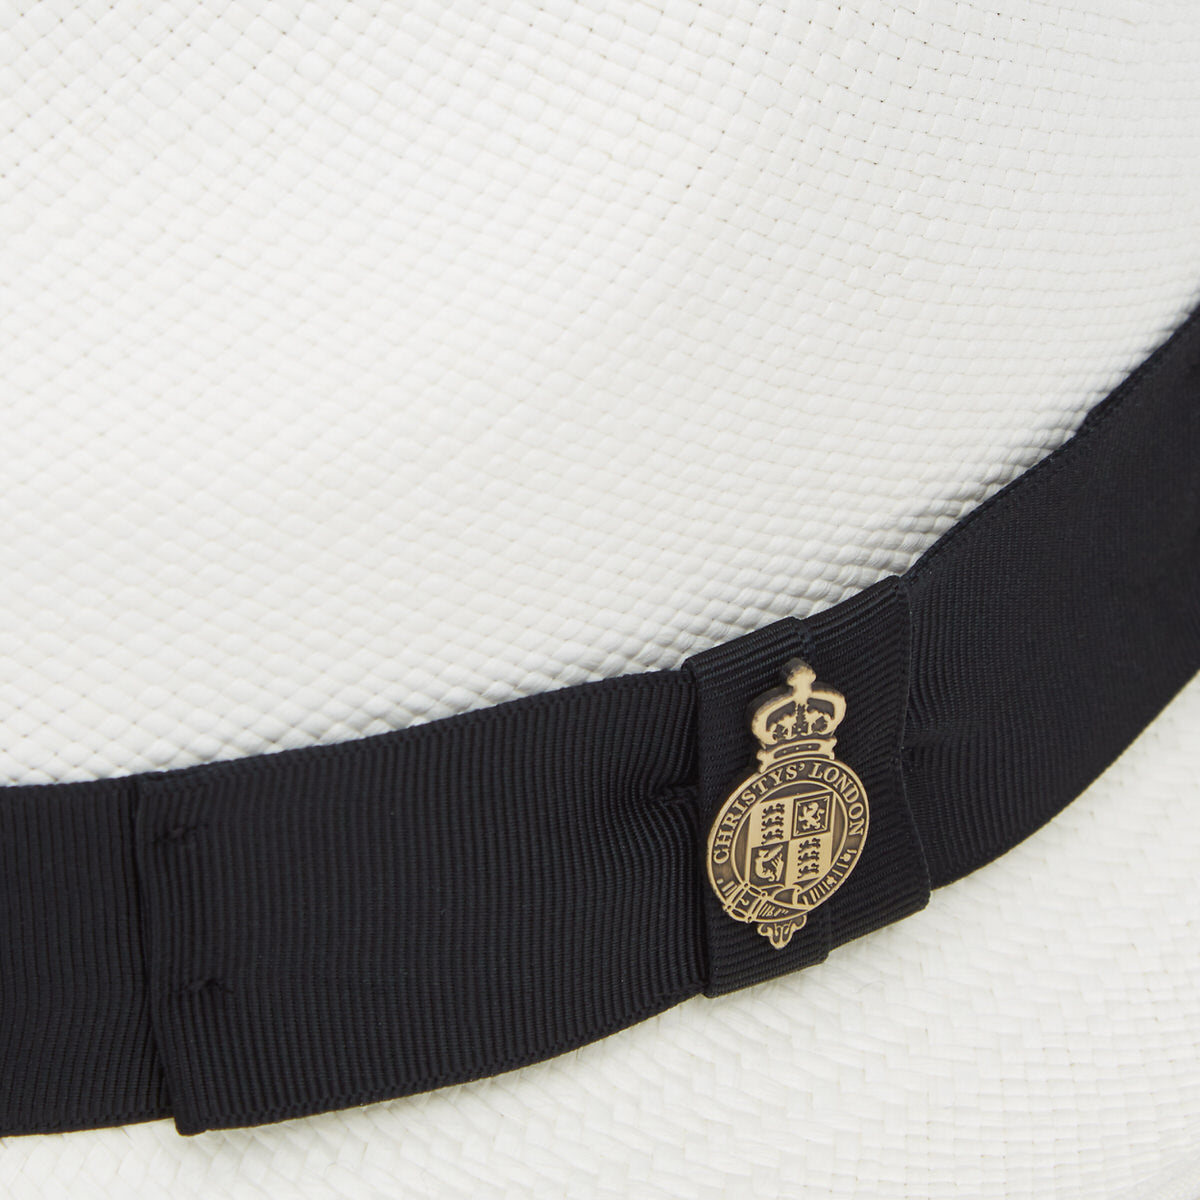 Classic Yorkie Panama Hat with Black Band & Cream Binding